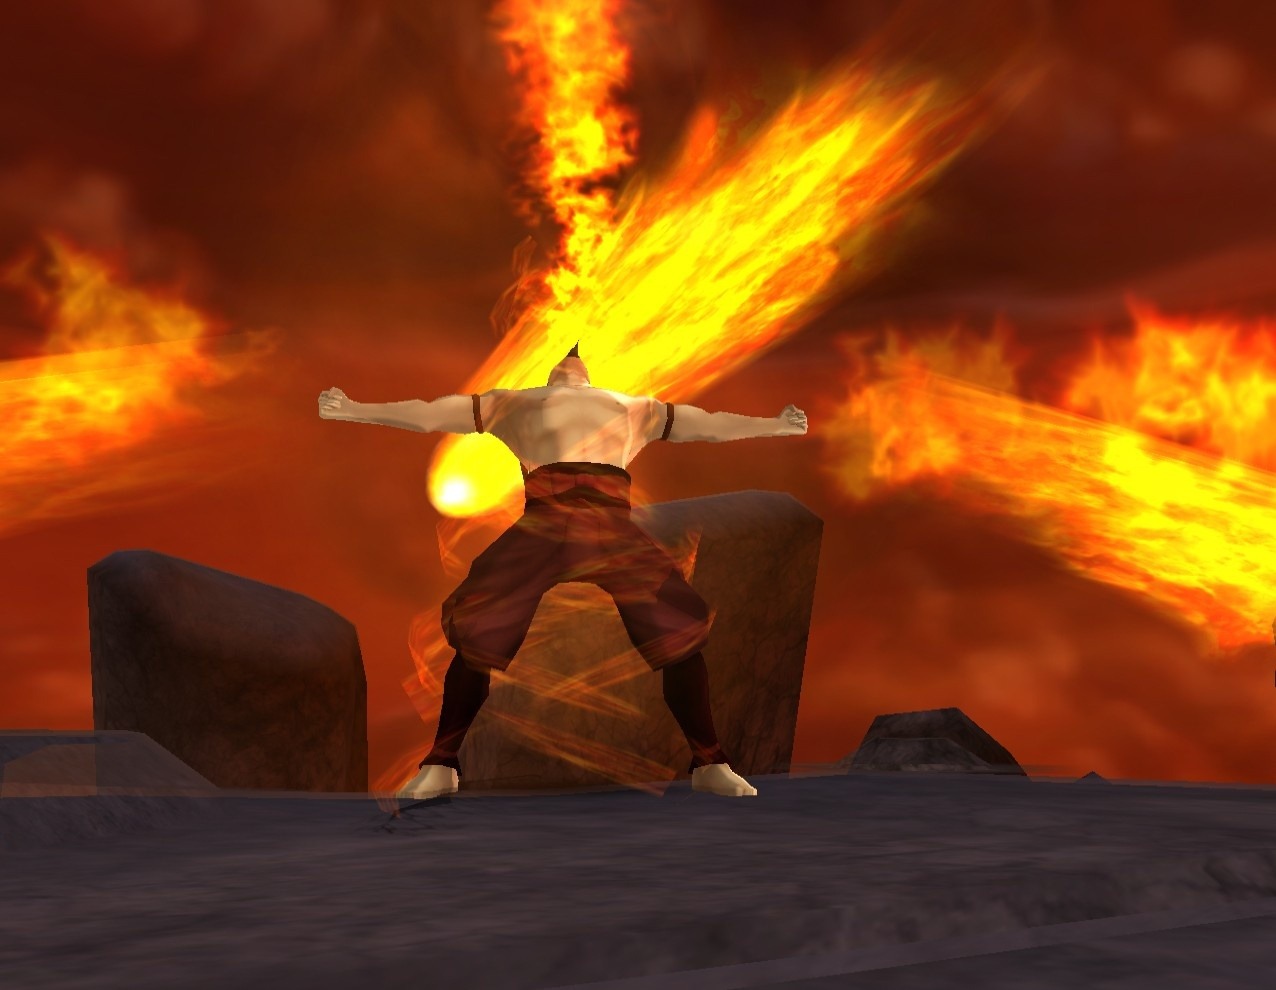 http://image.jeuxvideo.com/images/wi/a/v/avatar-le-dernier-maitre-de-l-air-into-the-inferno-wii-001.jpg